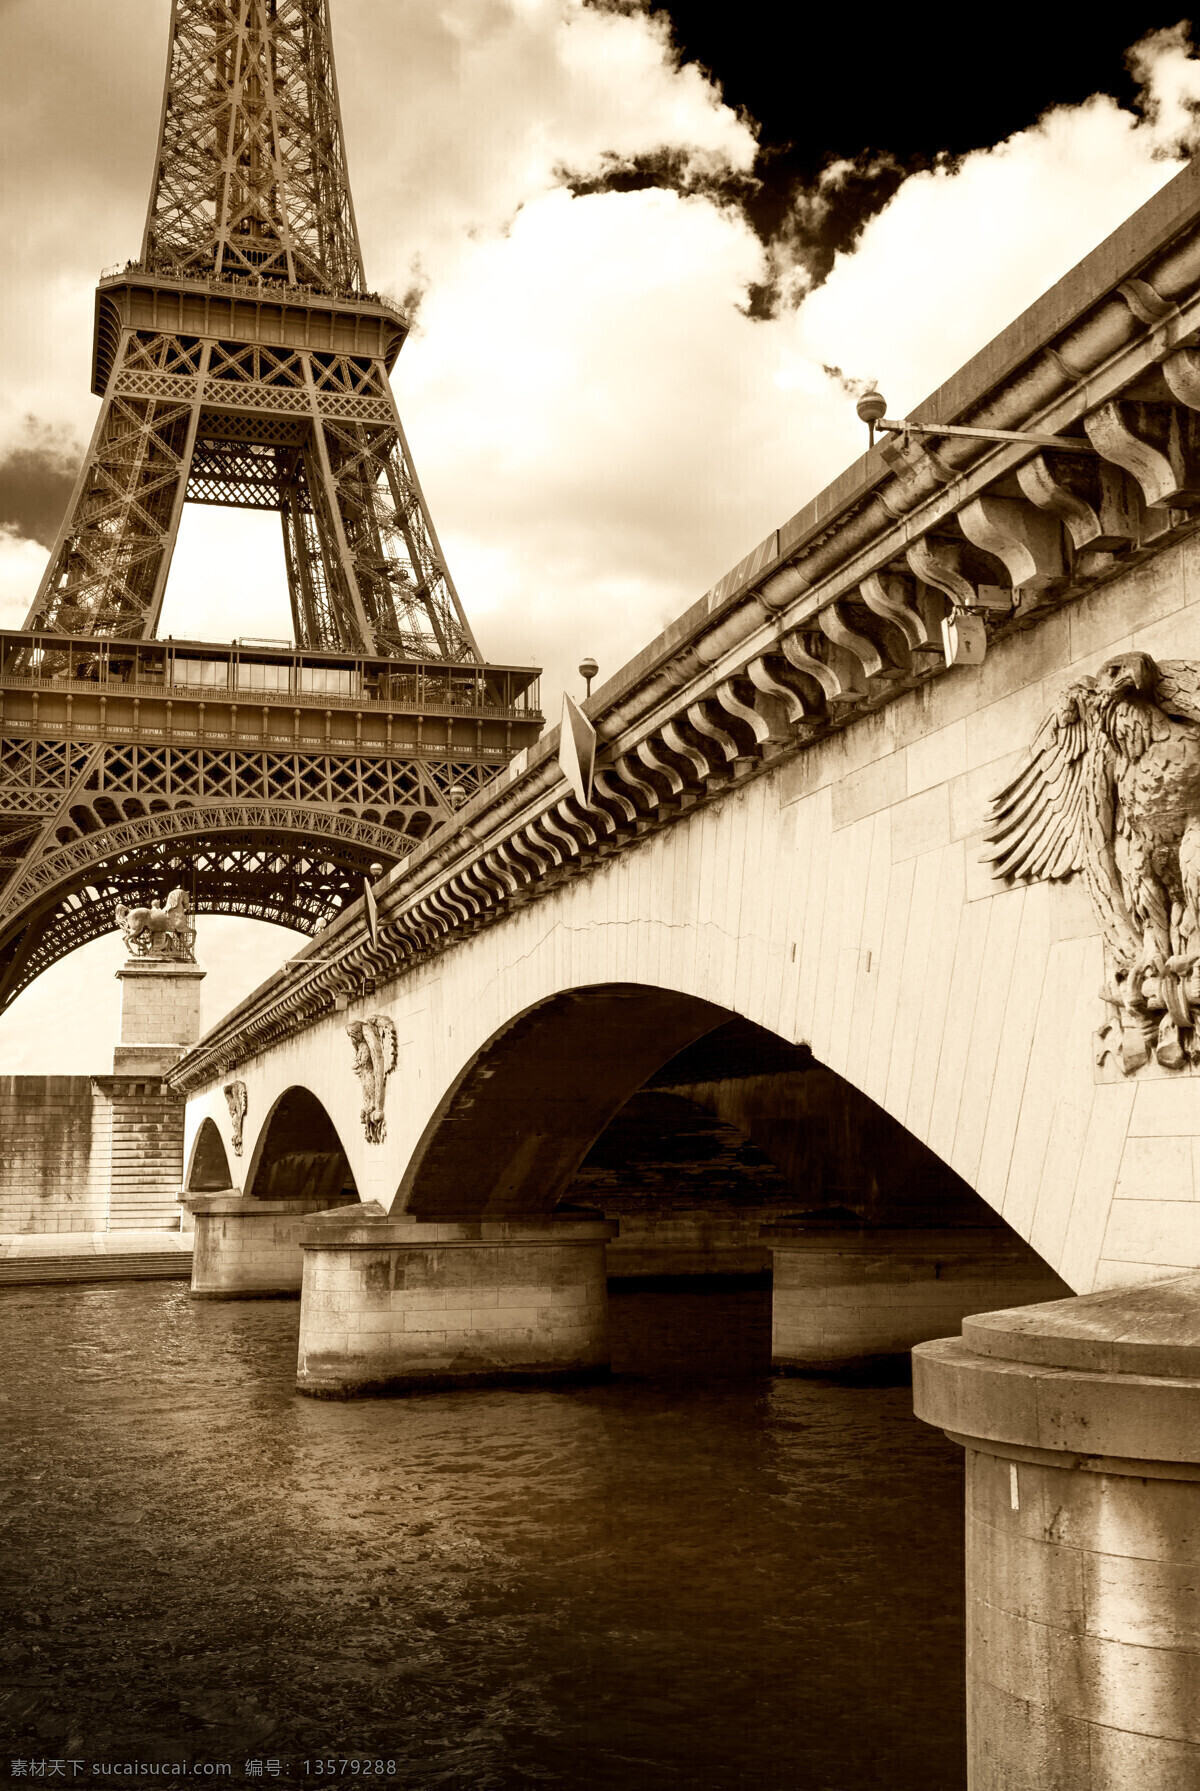 巴黎埃菲尔铁塔 桥梁风景 埃菲尔铁塔 巴黎风景 法国旅游景点 文明古迹 美丽风景 风景图片